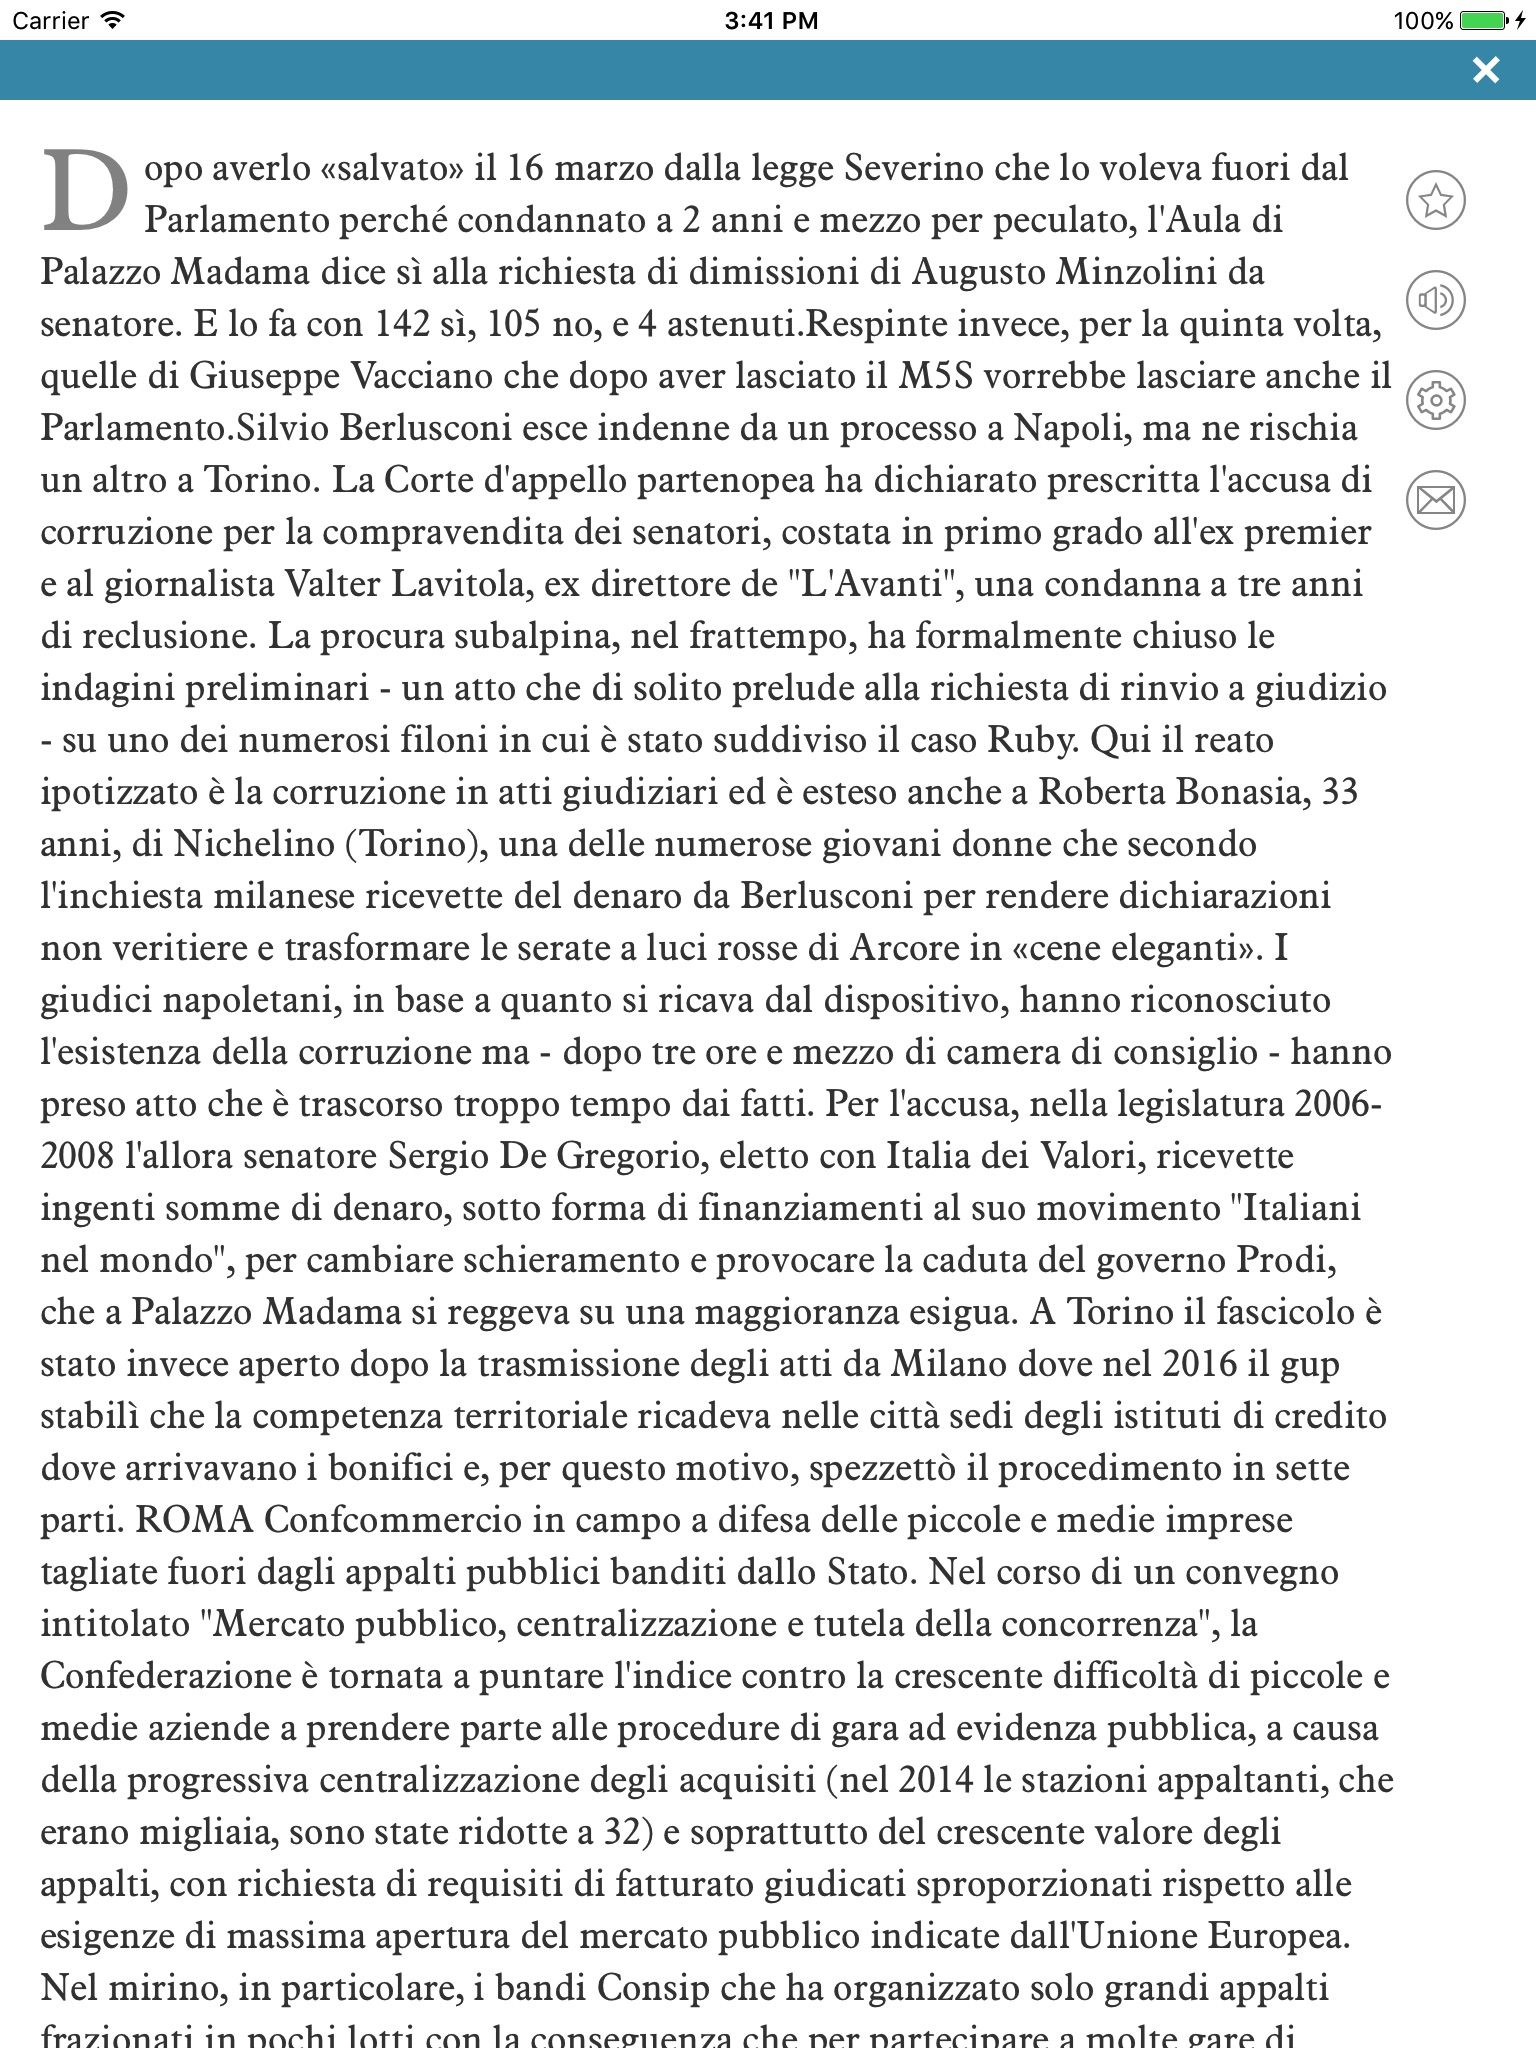 La Gazzetta di Modena screenshot 3